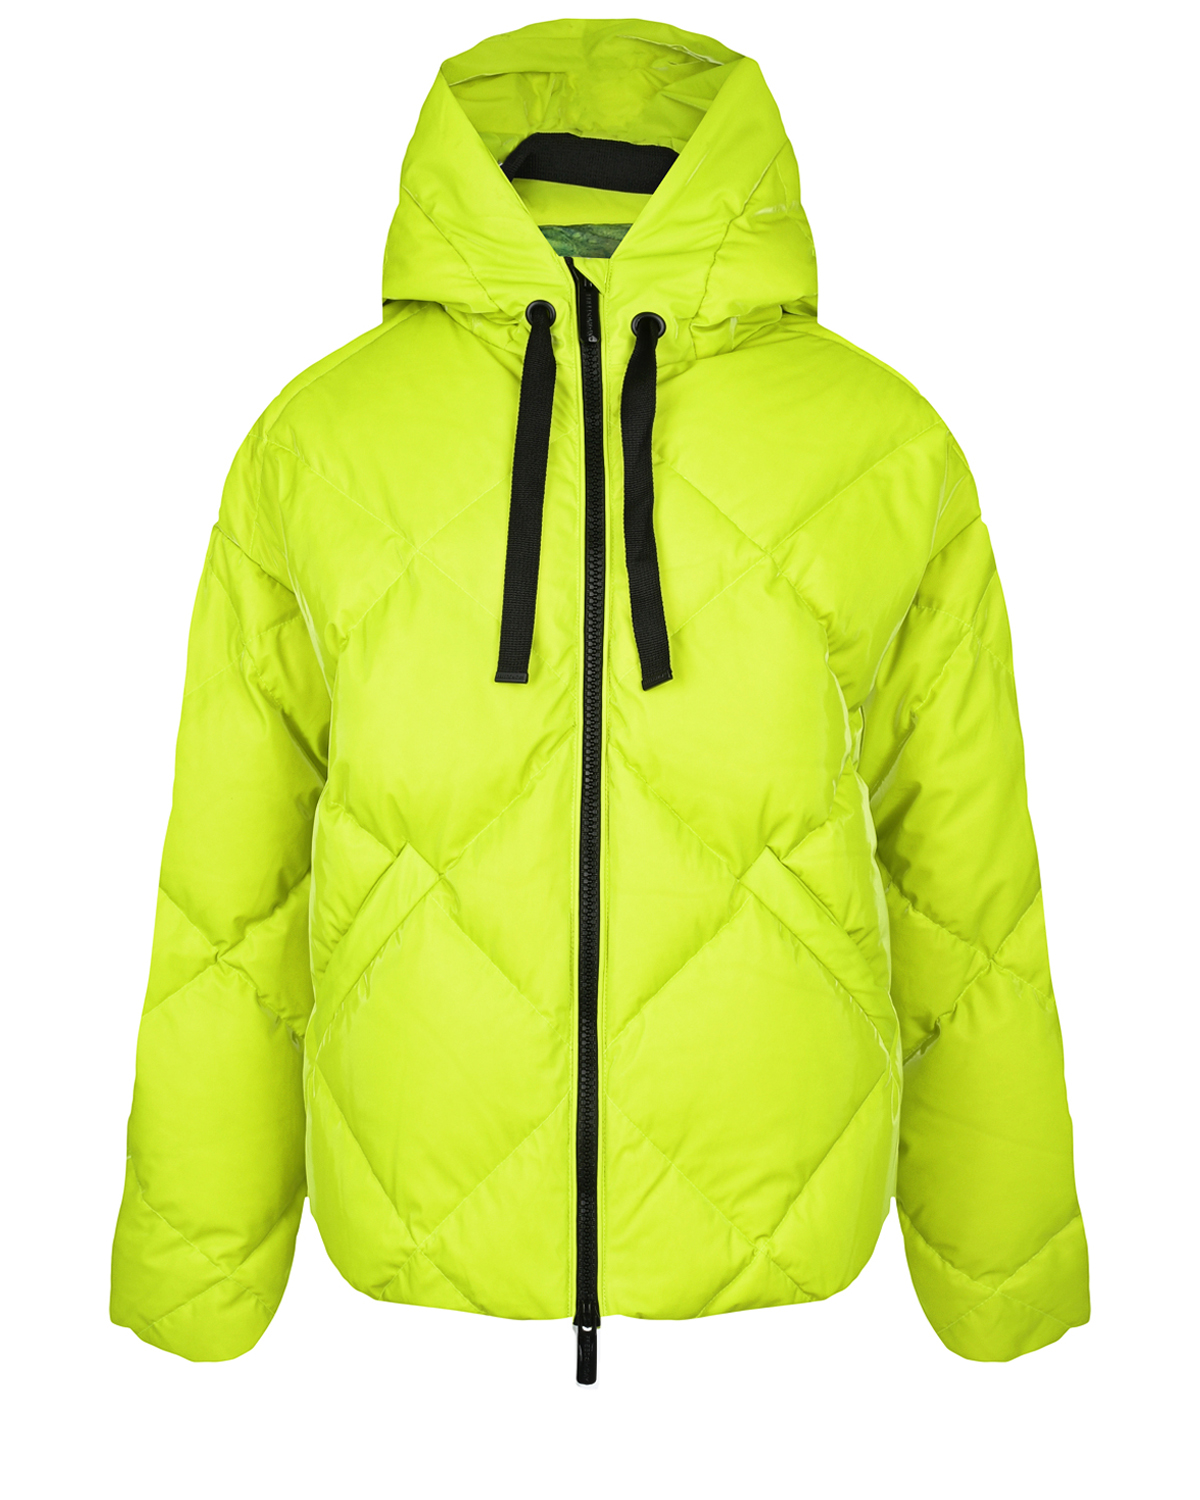 Салатовая куртка со стеганой отделкой Freedomday, размер 38, цвет салатовый - фото 1